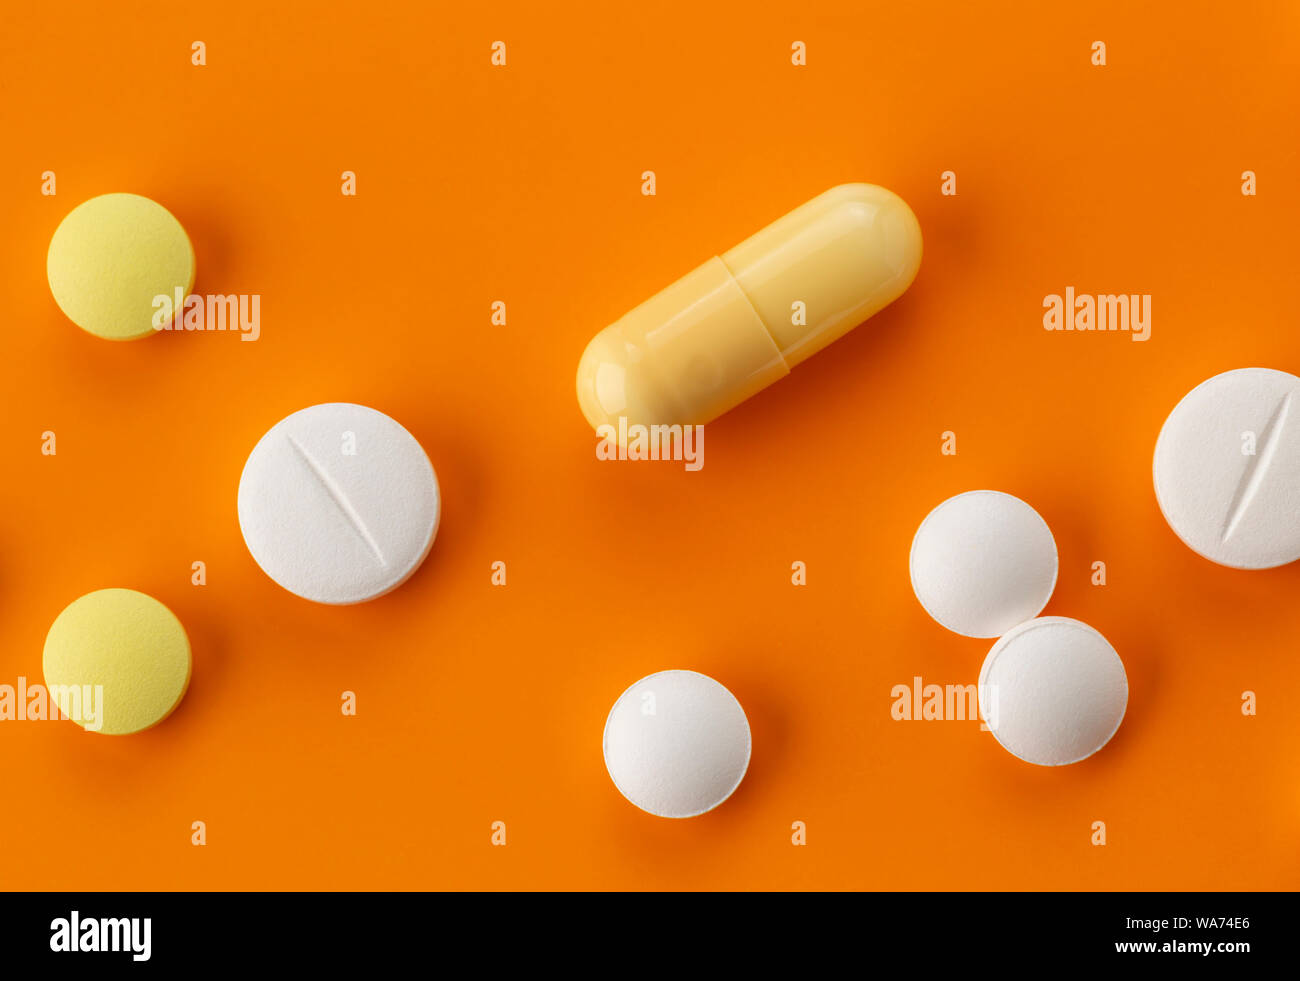 Verschiedene Tabletten und Kapseln mit Antibiotika auf einem orangefarbenen  Hintergrund Stockfotografie - Alamy